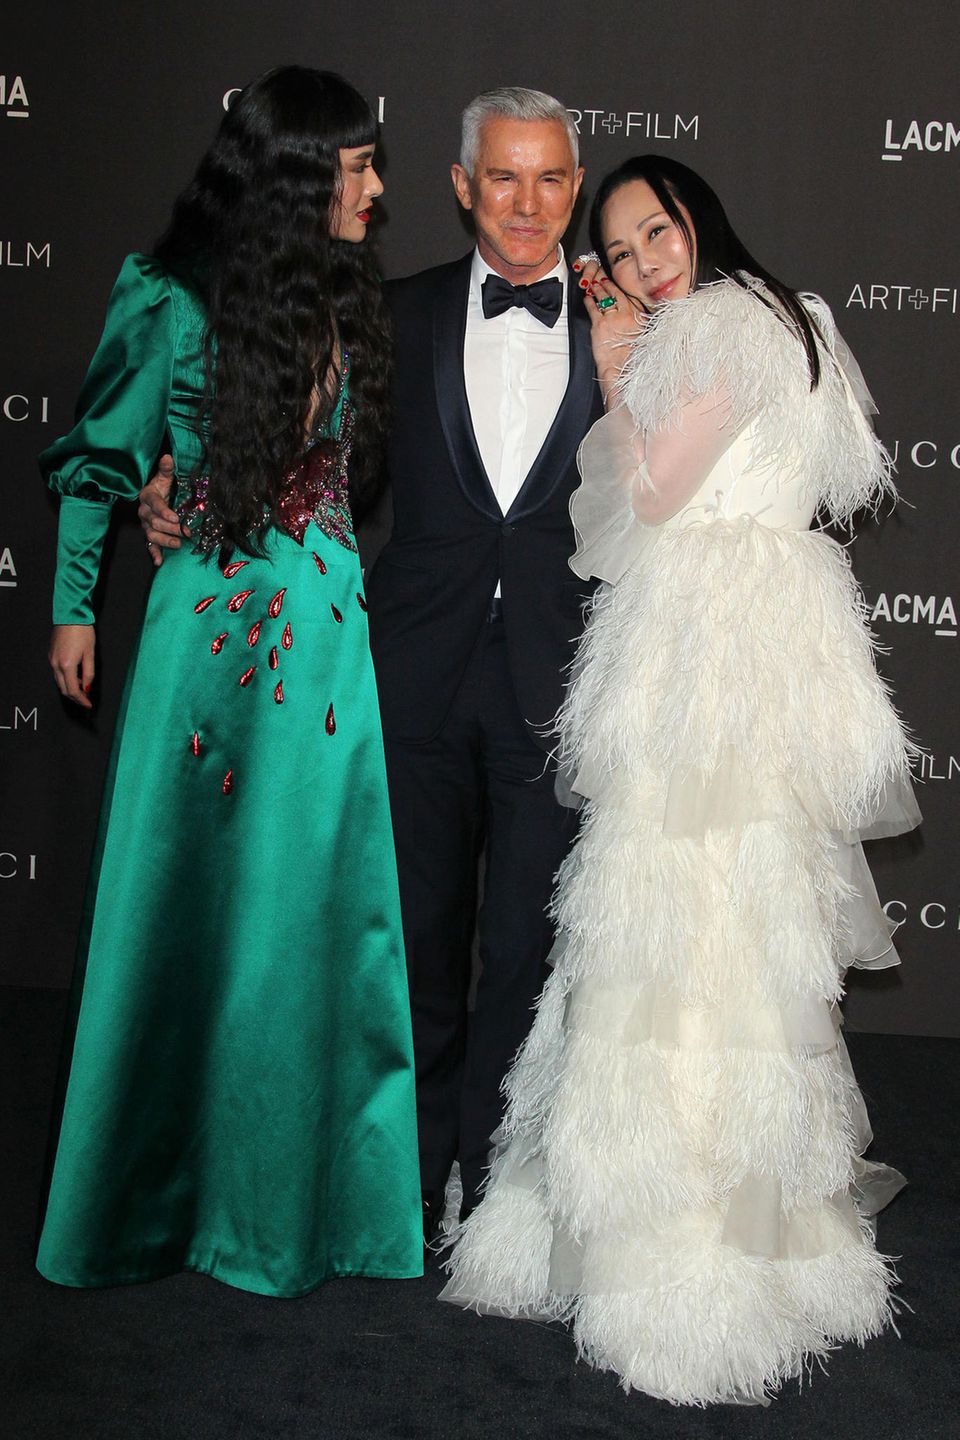 Regisseur Baz Luhrmann fühlt sich neben Asia Chow in Smaragdgrün und Eva Chow im weißen Feder-Kleid sichtlich wohl.